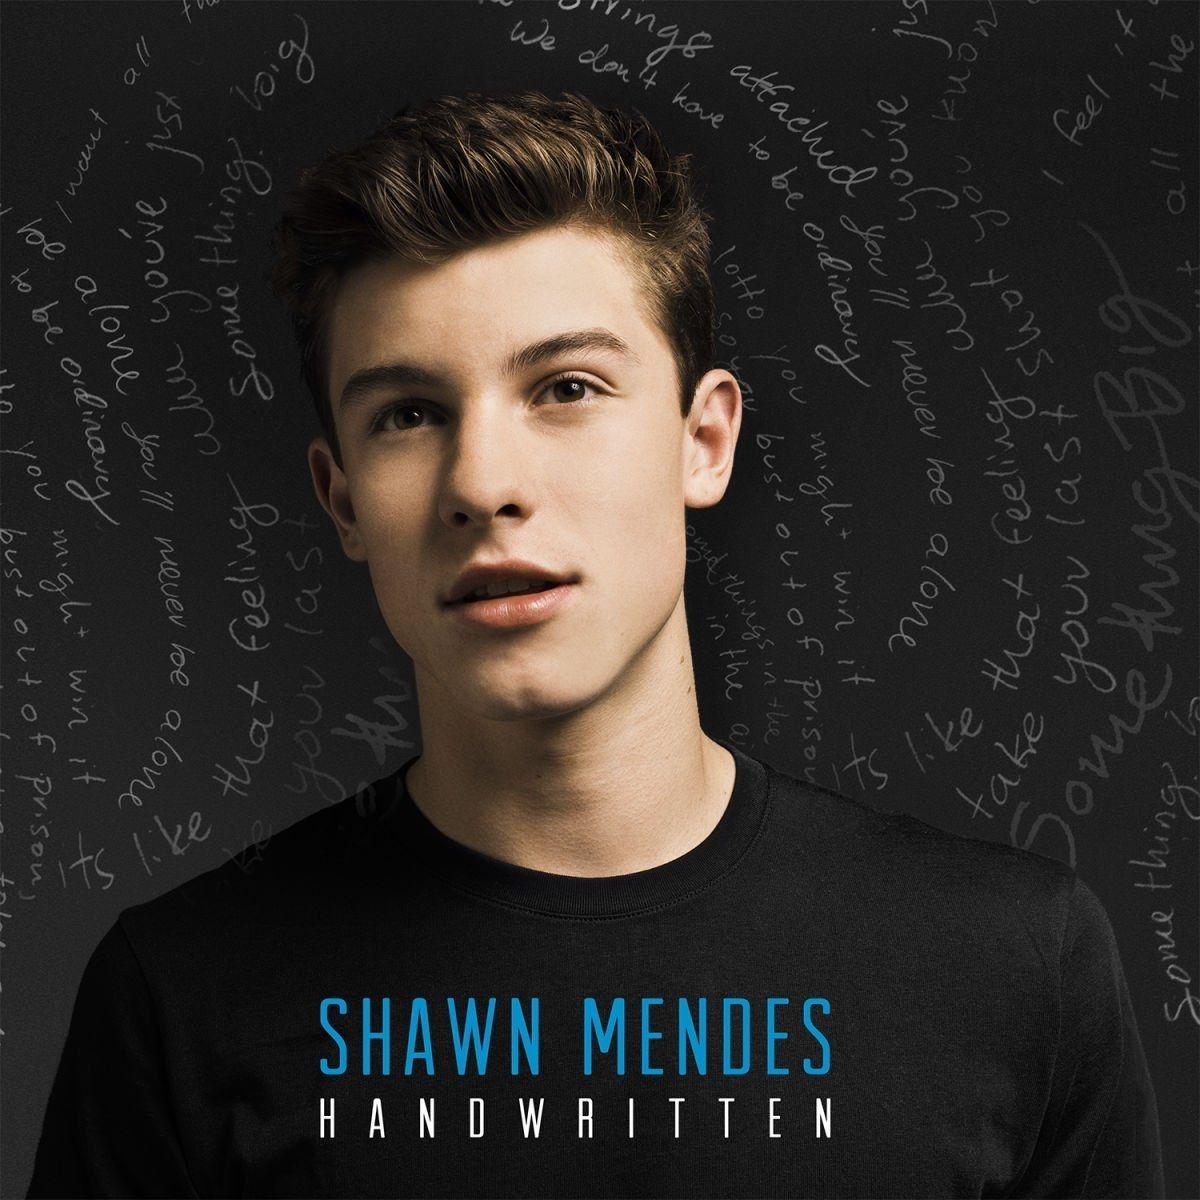 Imagem do álbum Handwritten (Deluxe) do(a) artista Shawn Mendes